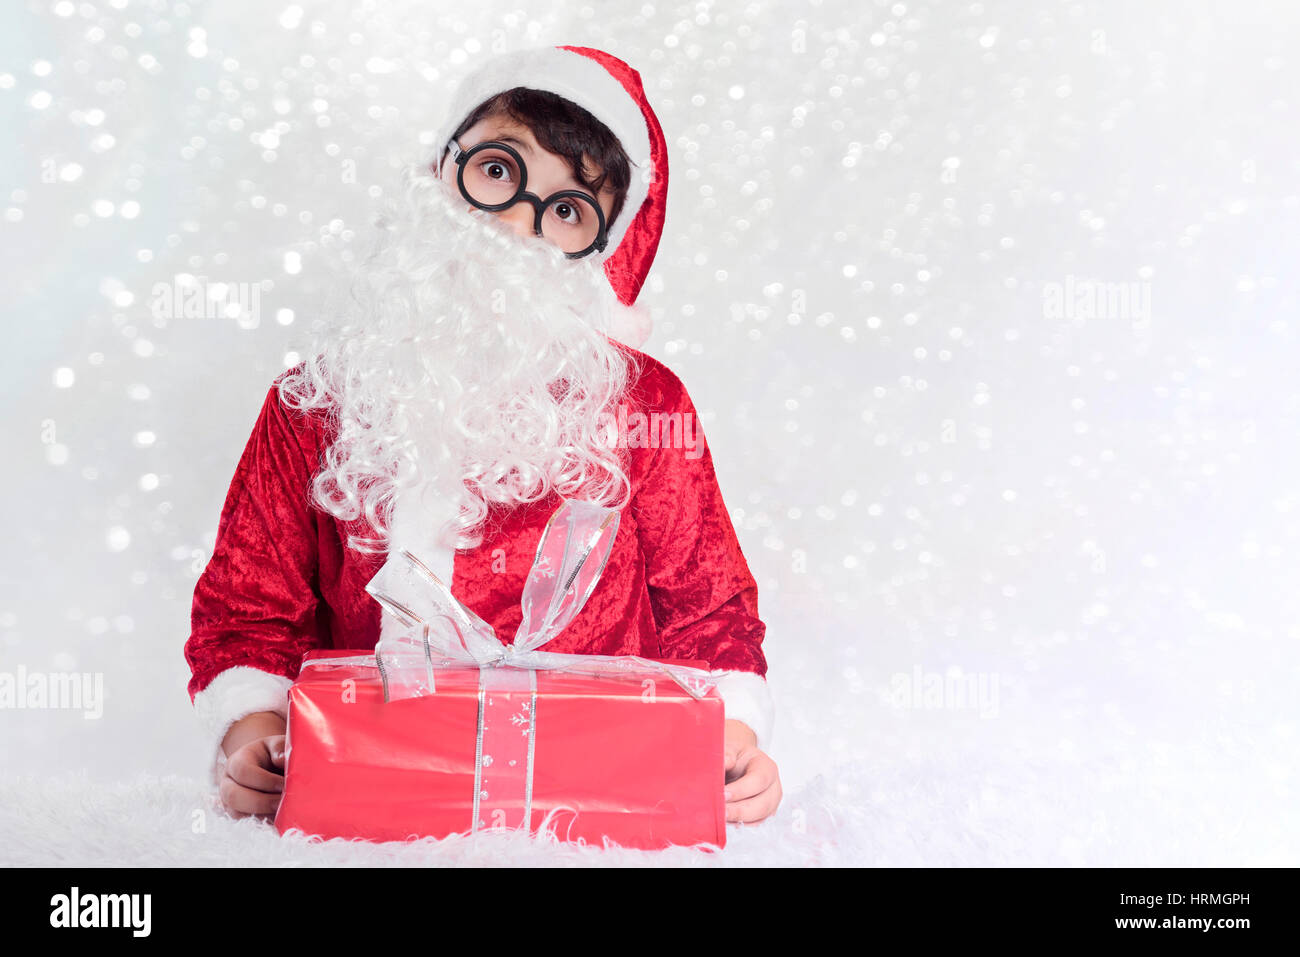 Boy dressed as Santa Claus Banque D'Images